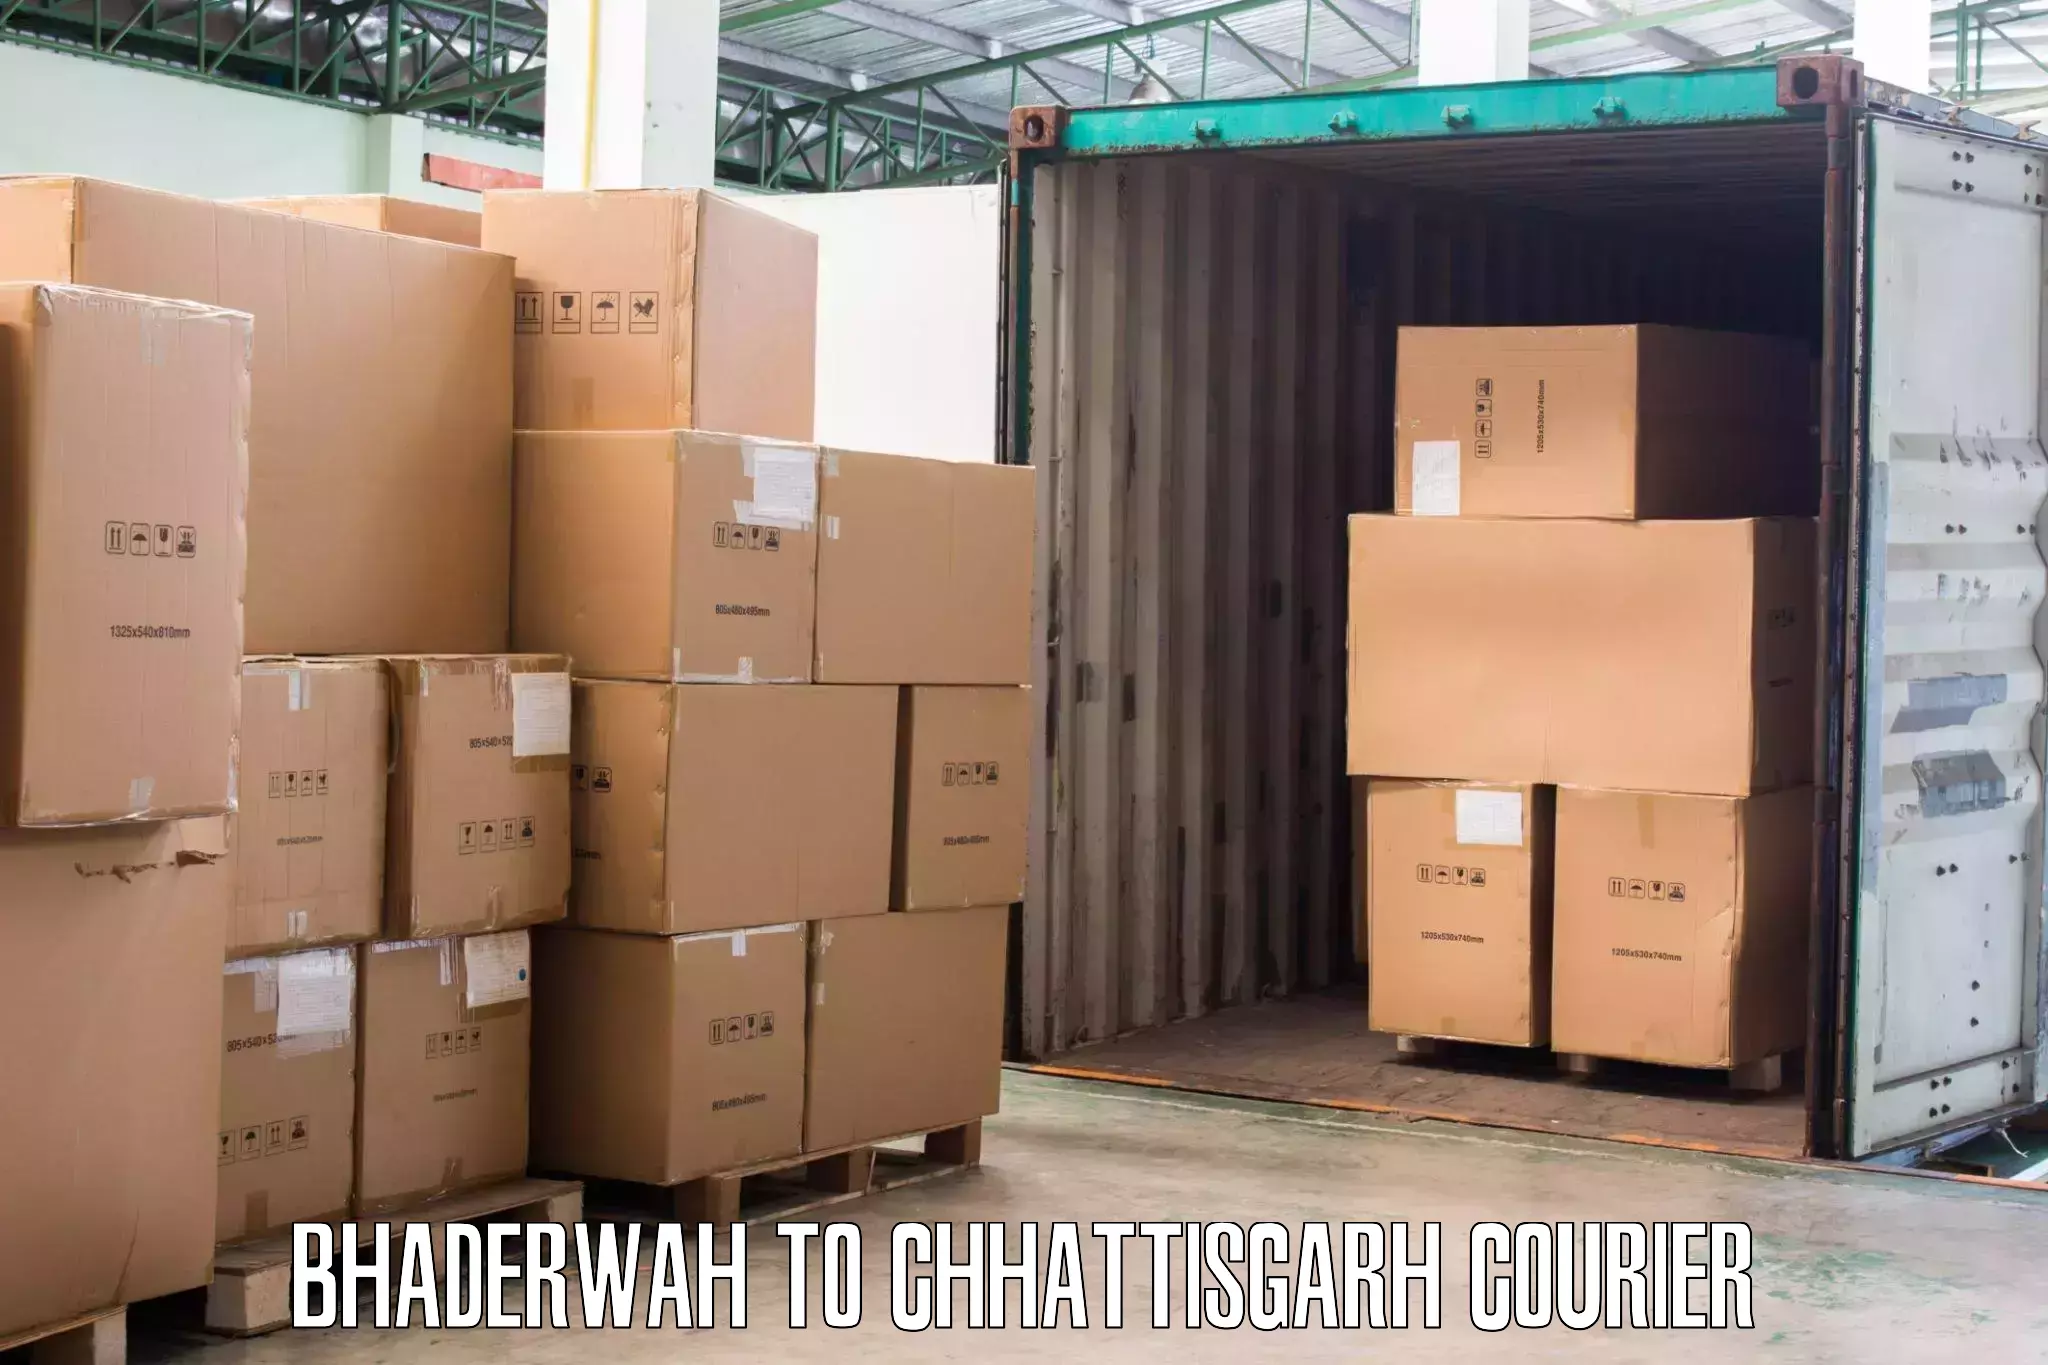 Reliable goods transport Bhaderwah to Raigarh Chhattisgarh